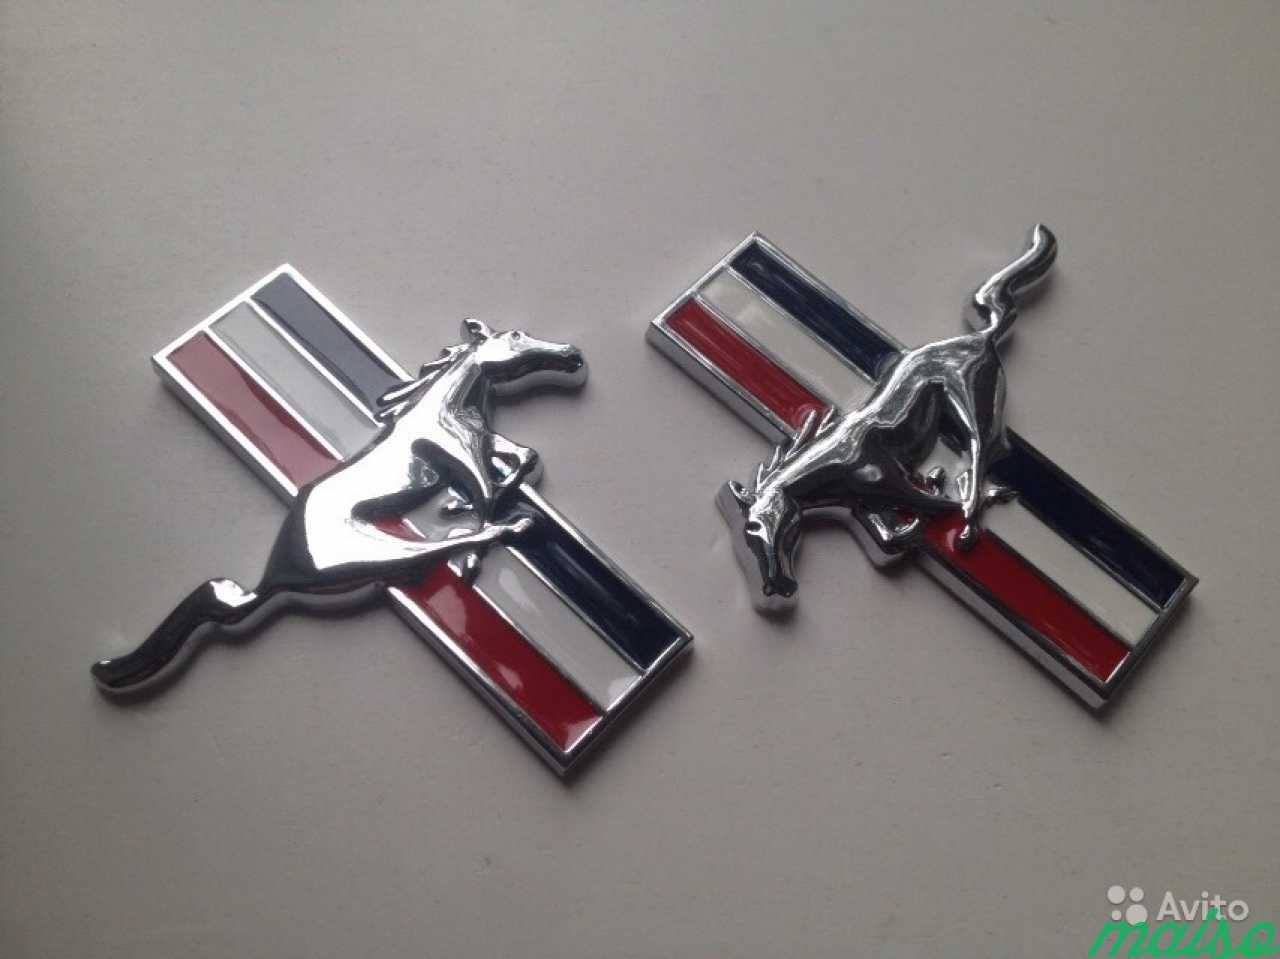 Эмблемы Ford Mustang на крылья 2 штуки в Санкт-Петербурге. Фото 4